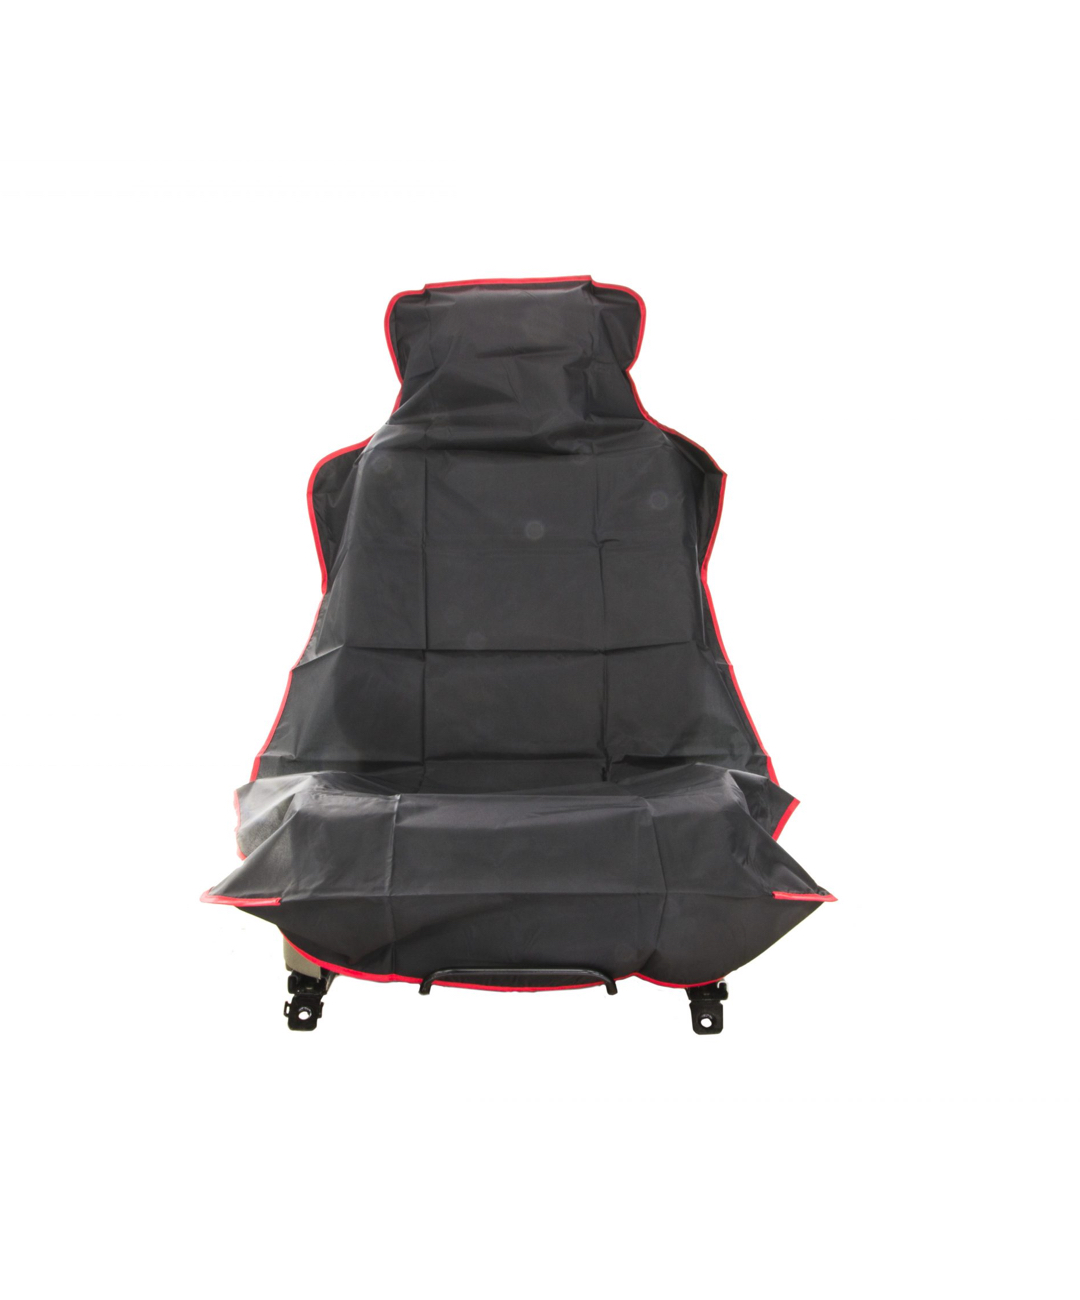 Nylon seat cover